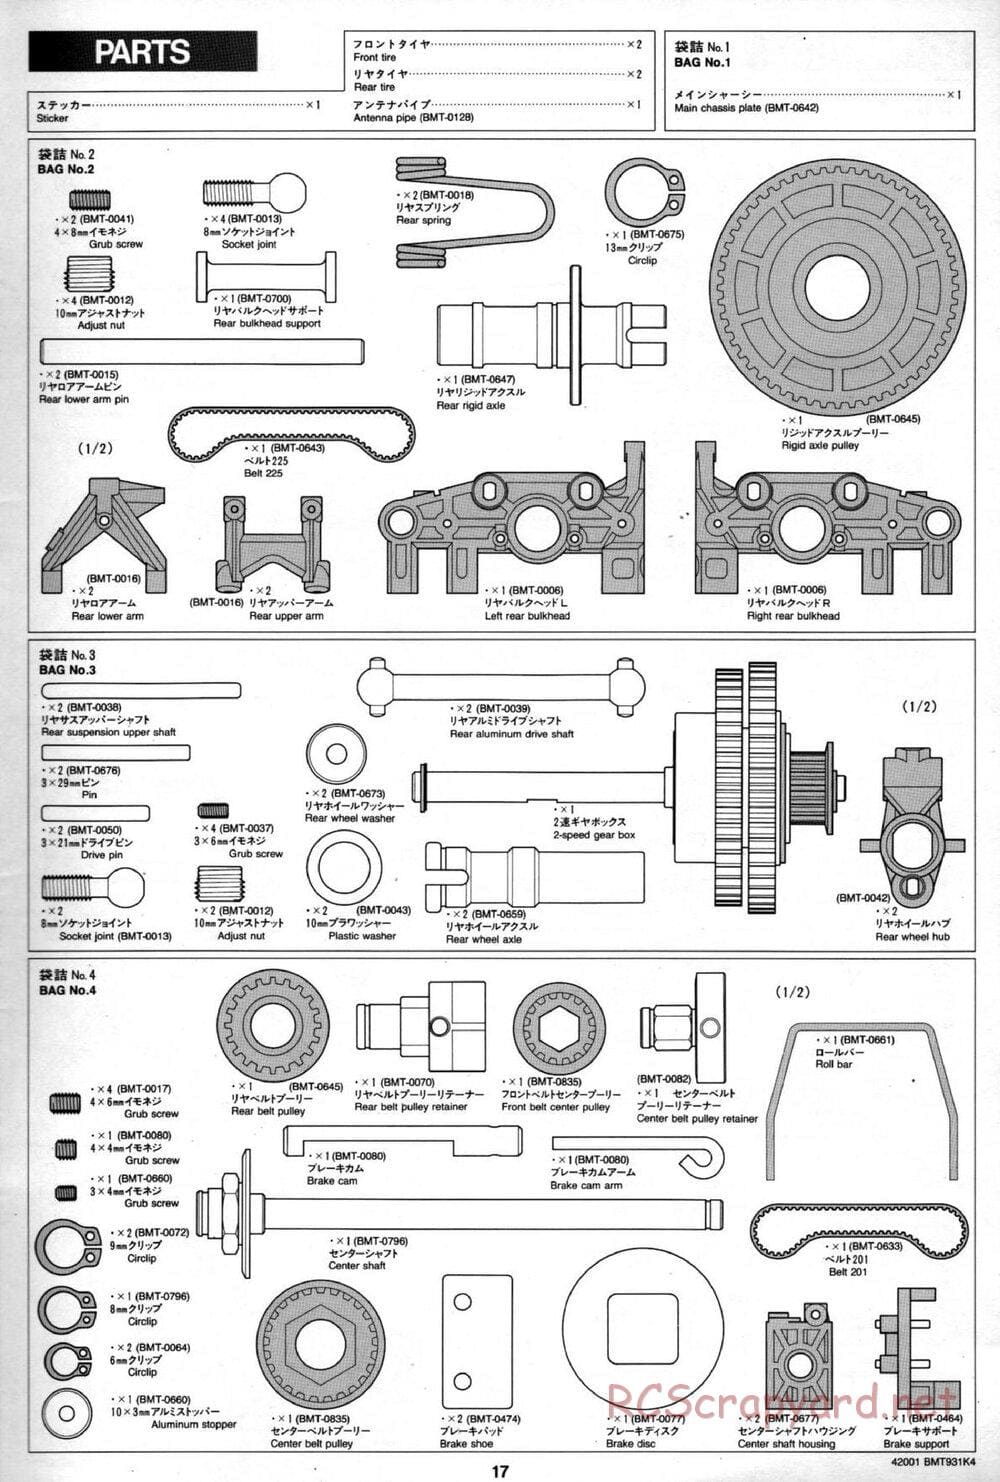 Tamiya - BMT 931 K4 Racing Chassis - Manual - Page 16